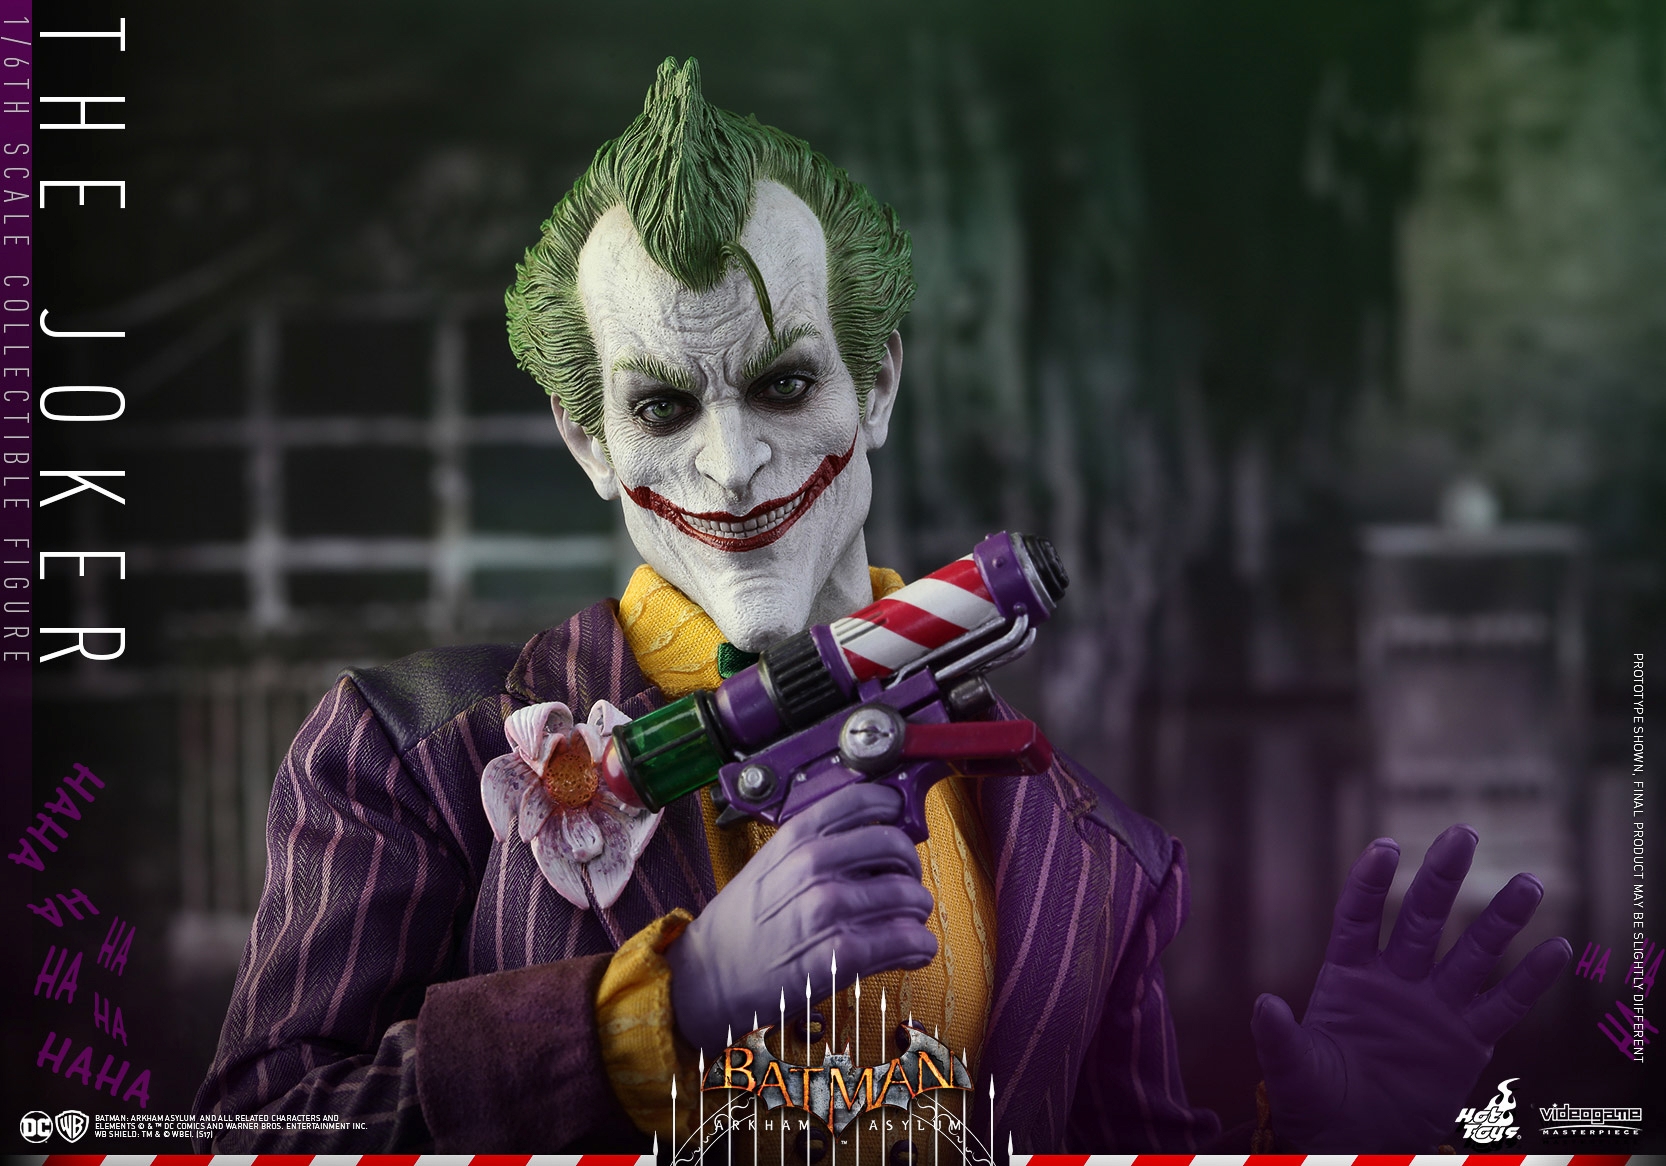 Hot-Toys-Batman-Arkham-Asylum-Joker-Collectible-Figure-019.jpg